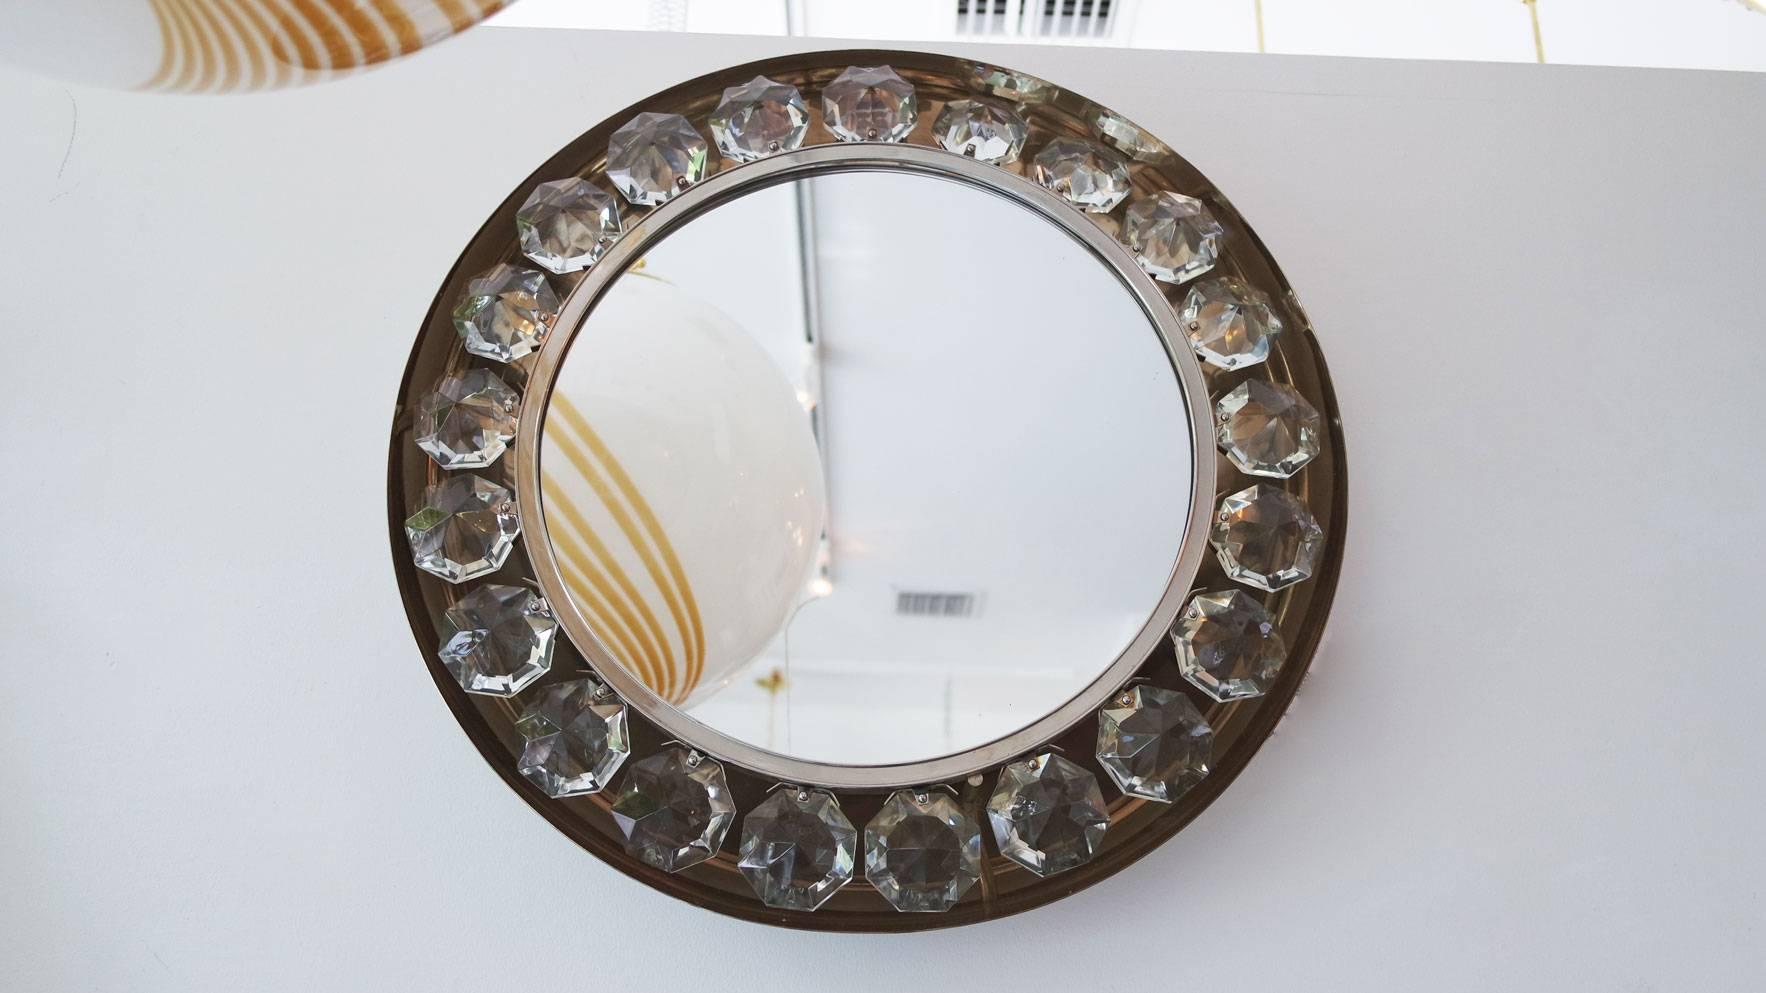 Vintage round nickel mirror with jewel element surround by Firma Jochmann.